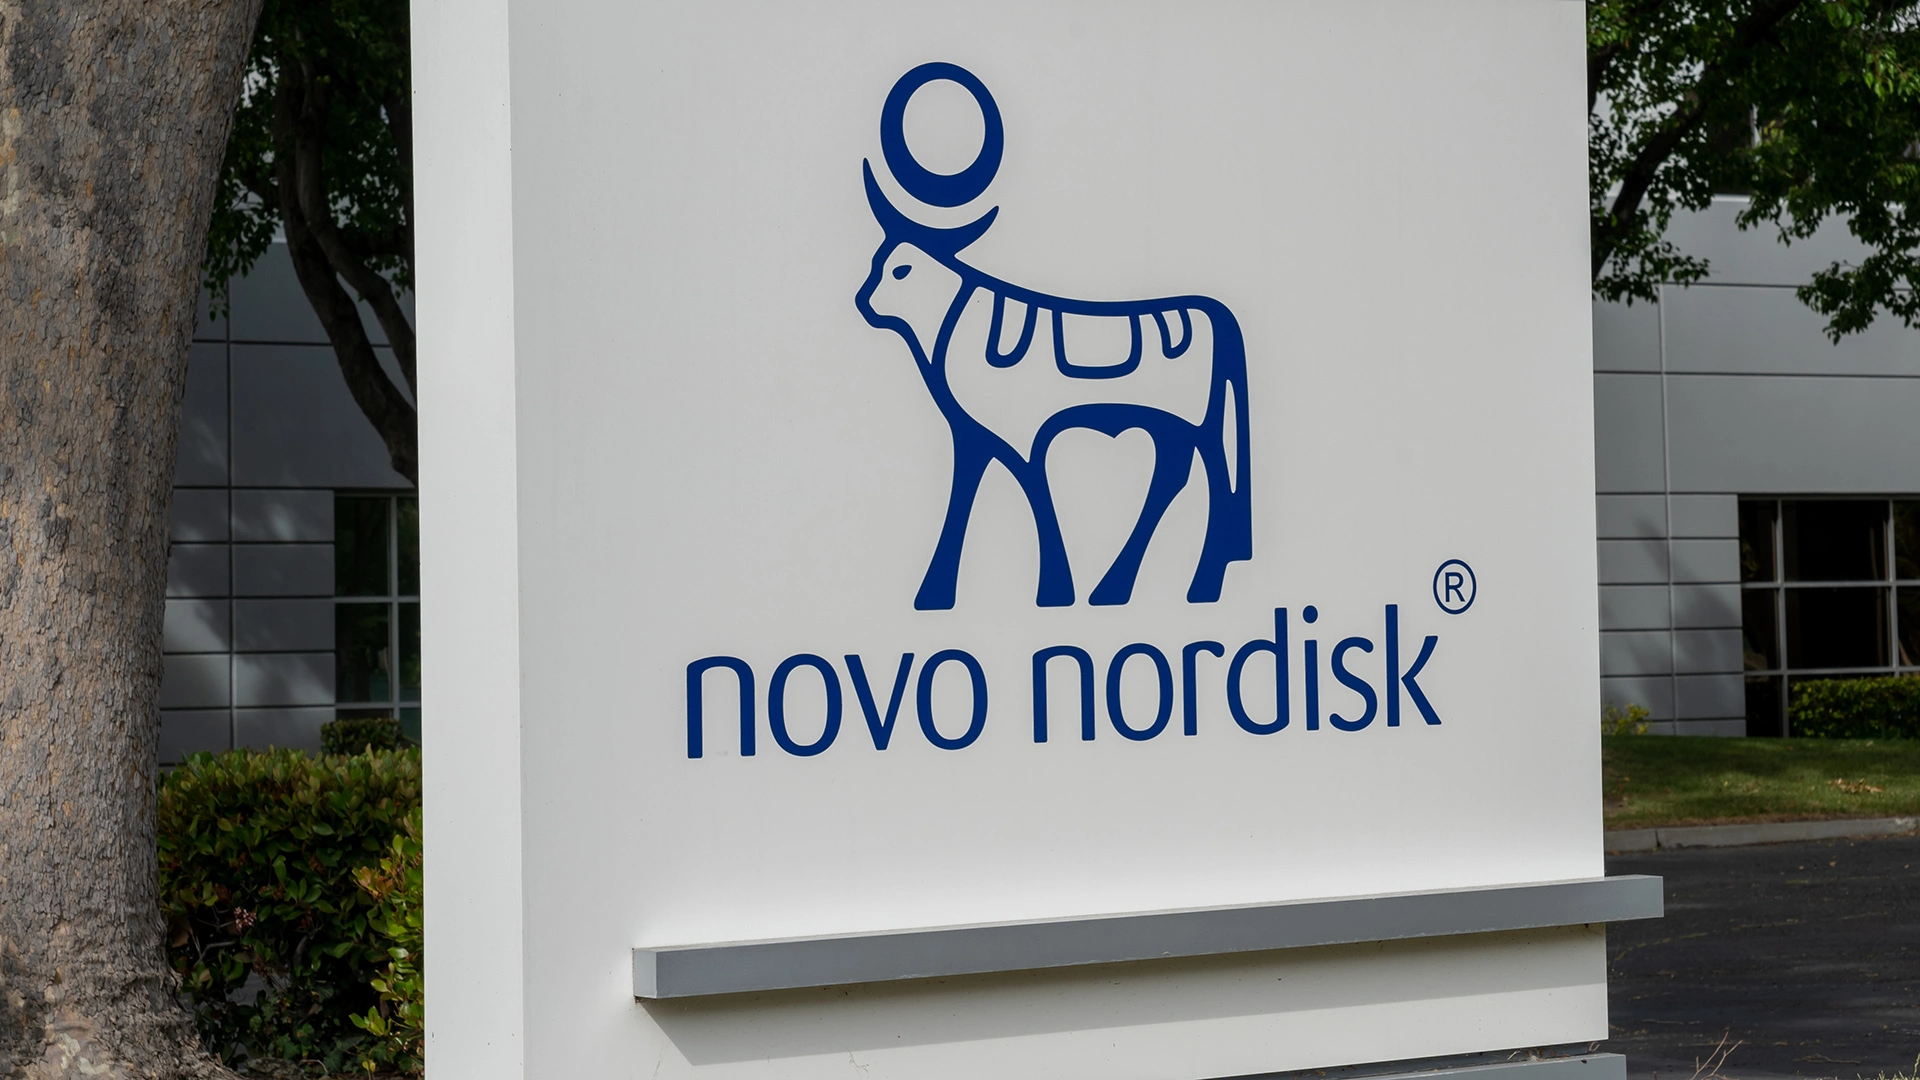 Immer noch ein Pflichtkauf? Deswegen könnte die Rallye bei der Novo Nordisk&#8209;Aktie weitergehen (Foto: JHVEPhoto/Shutterstock)